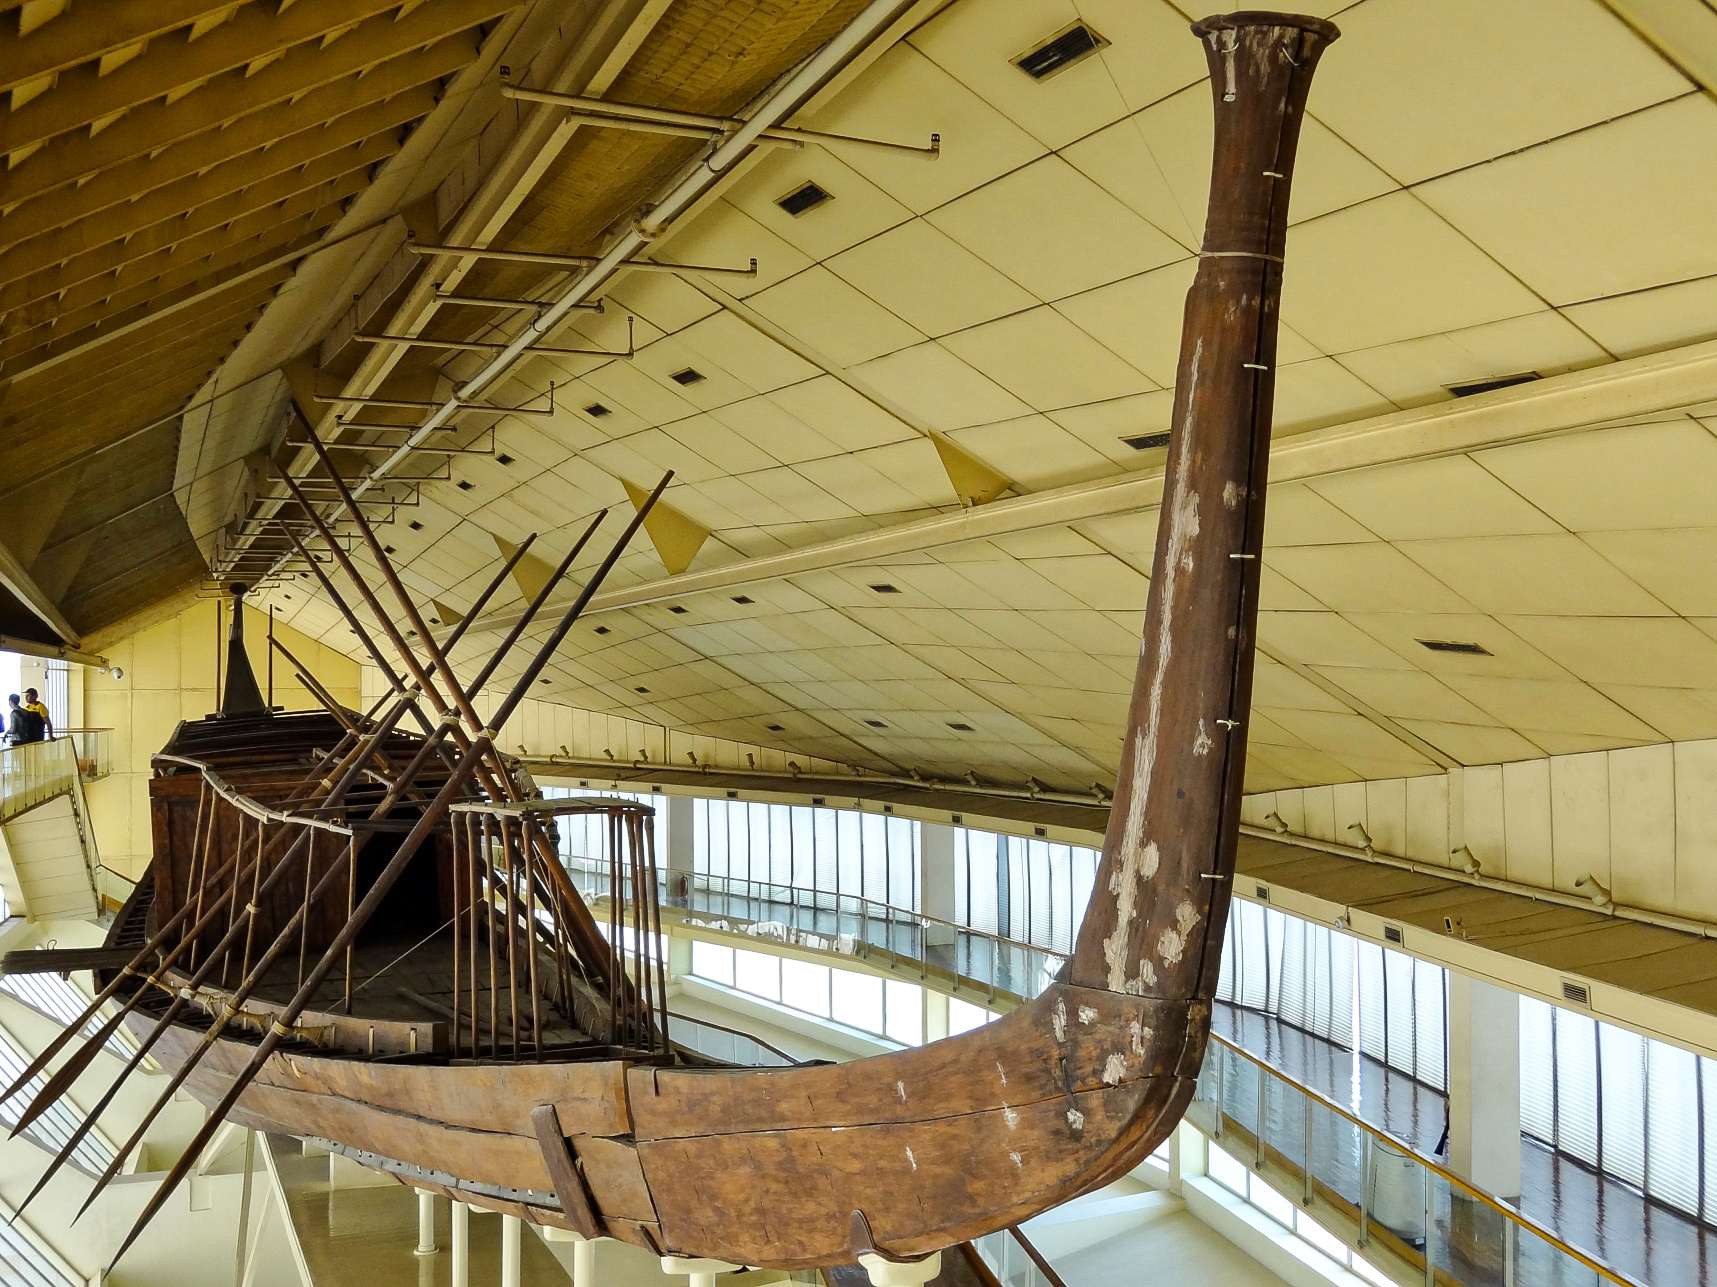 کشتی اول خورشیدی خوفو (تاریخ: حدود 2,566 قبل از میلاد)، محل کشف: جنوب هرم خوفو، جیزه. در سال 1954 توسط کمال الملاخ.